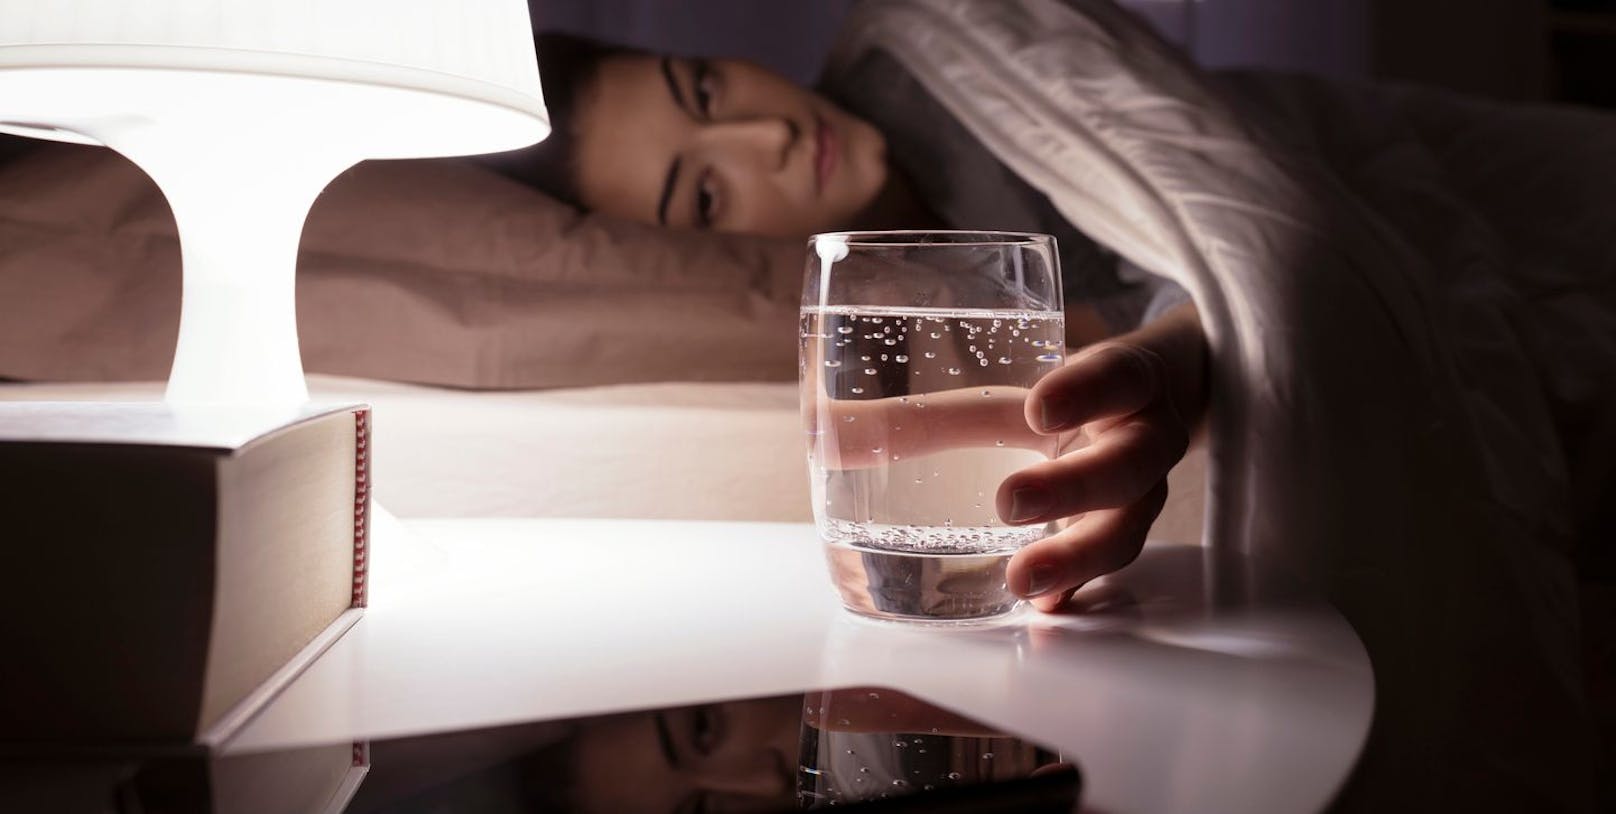 Wasser ist gesund und spendet deinem Körper die nötige Flüssigkeitszufuhr. Trinkst du allerdings kurz vor dem Schlaf zu viel davon kann dein Körper diesen nicht abtransportieren. Stille deinen Durst lieber einige Stunden bevor du dich hinlegst.